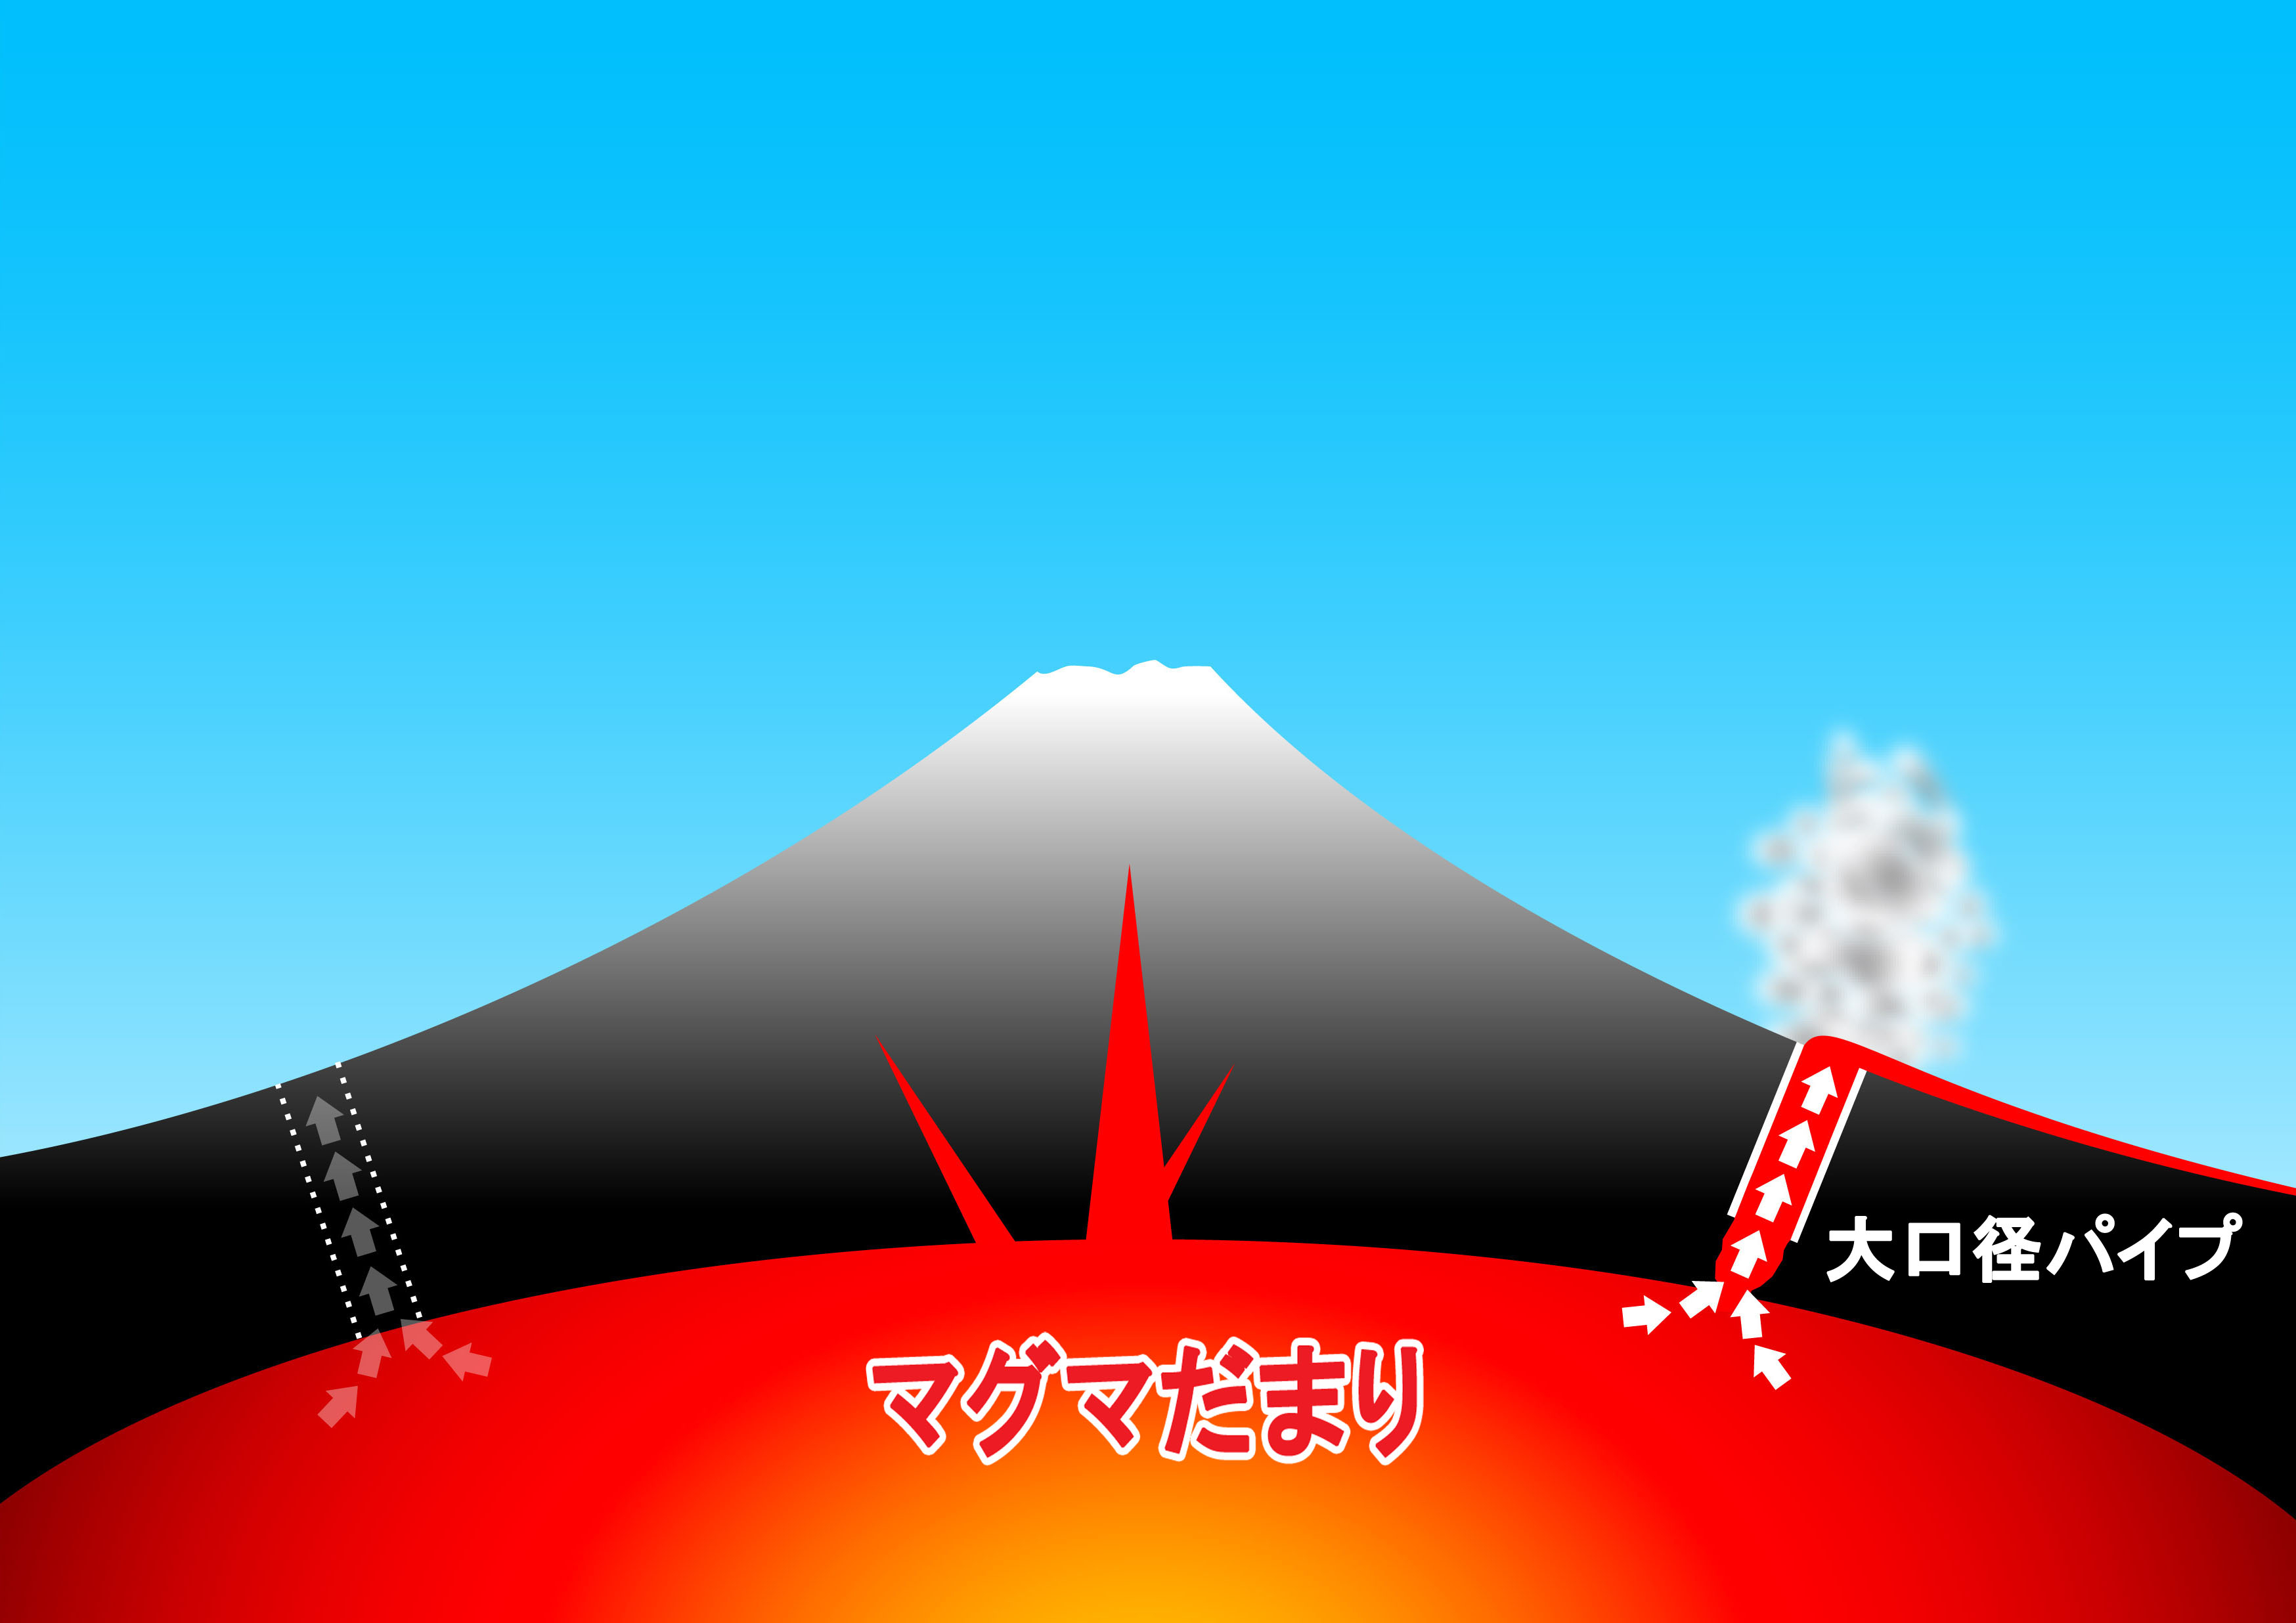 フジワラ産業 Fm式マグマ抜き工法 の開発を検討 日本の象徴 美しい富士山の噴火予防対策としてー フジワラ産業株式会社のプレスリリース